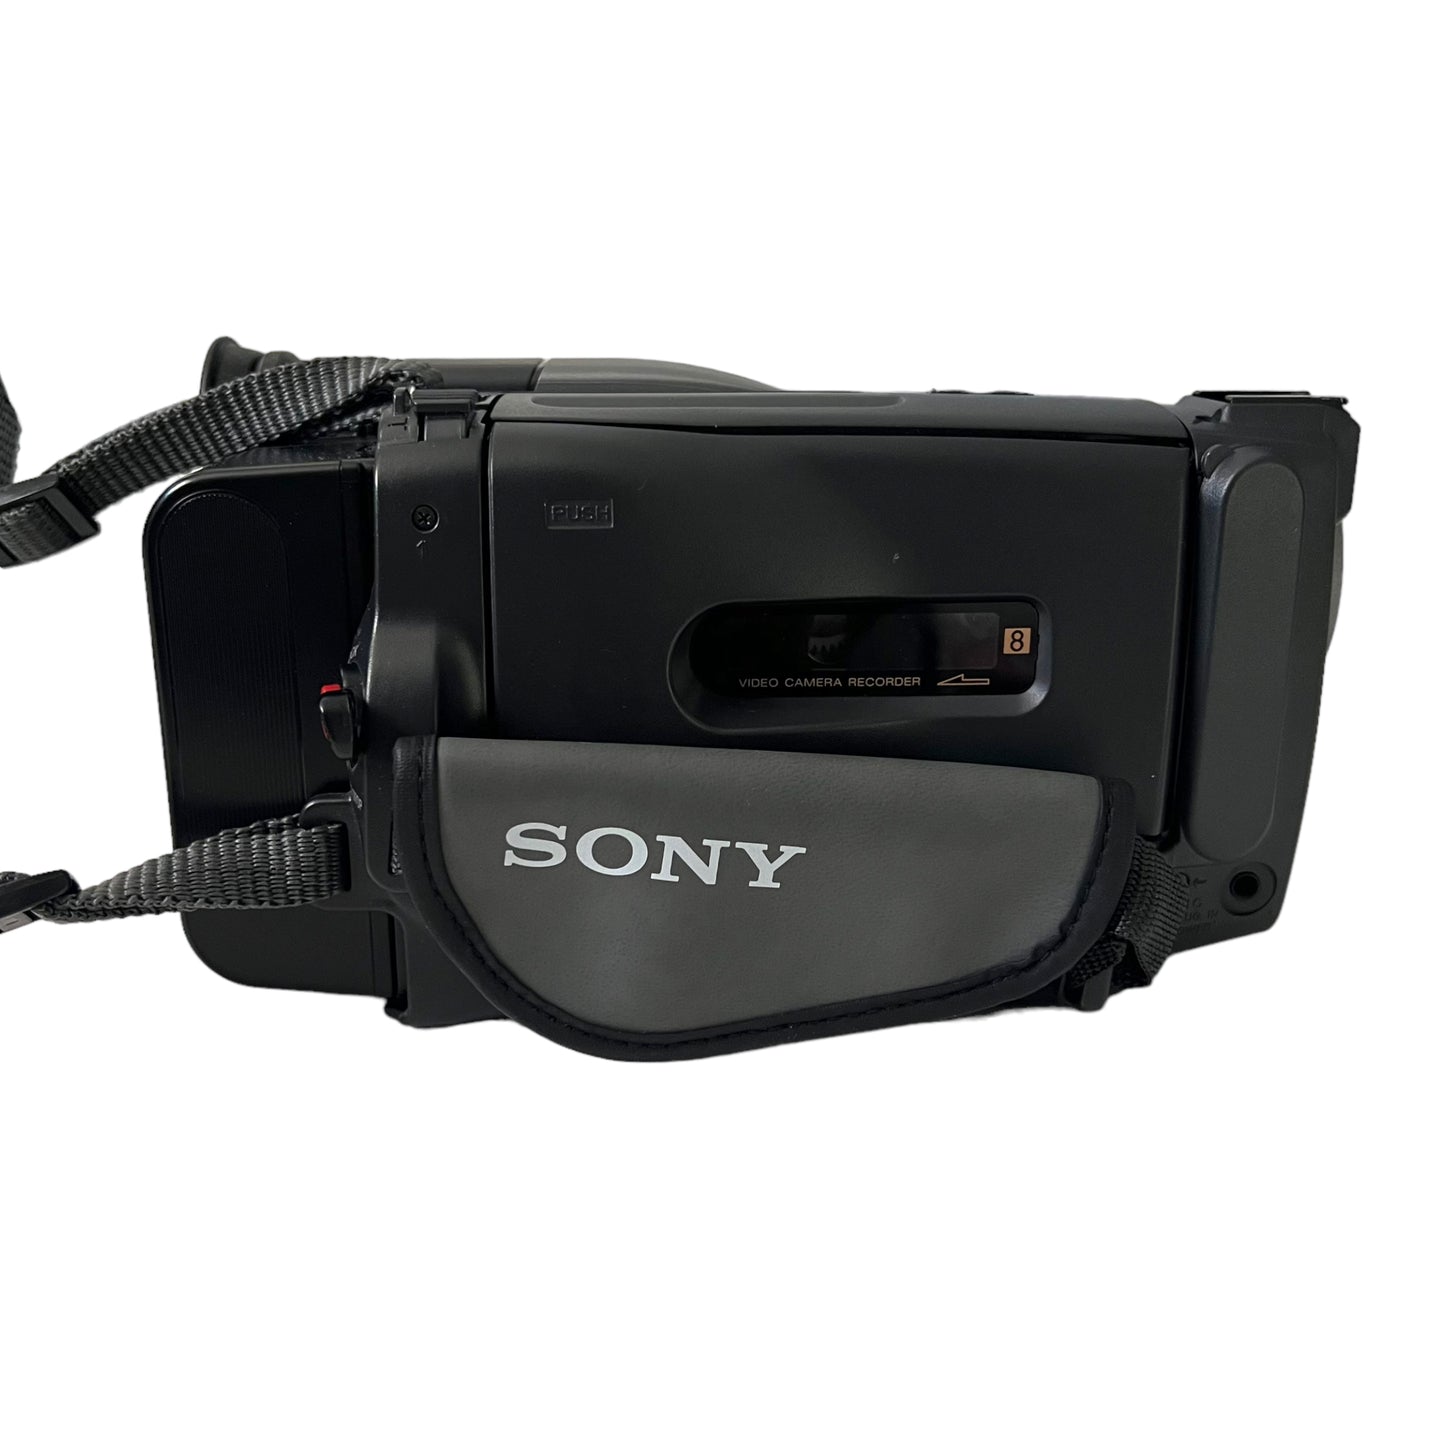 Sony TRV32 Hi8 Camcorder